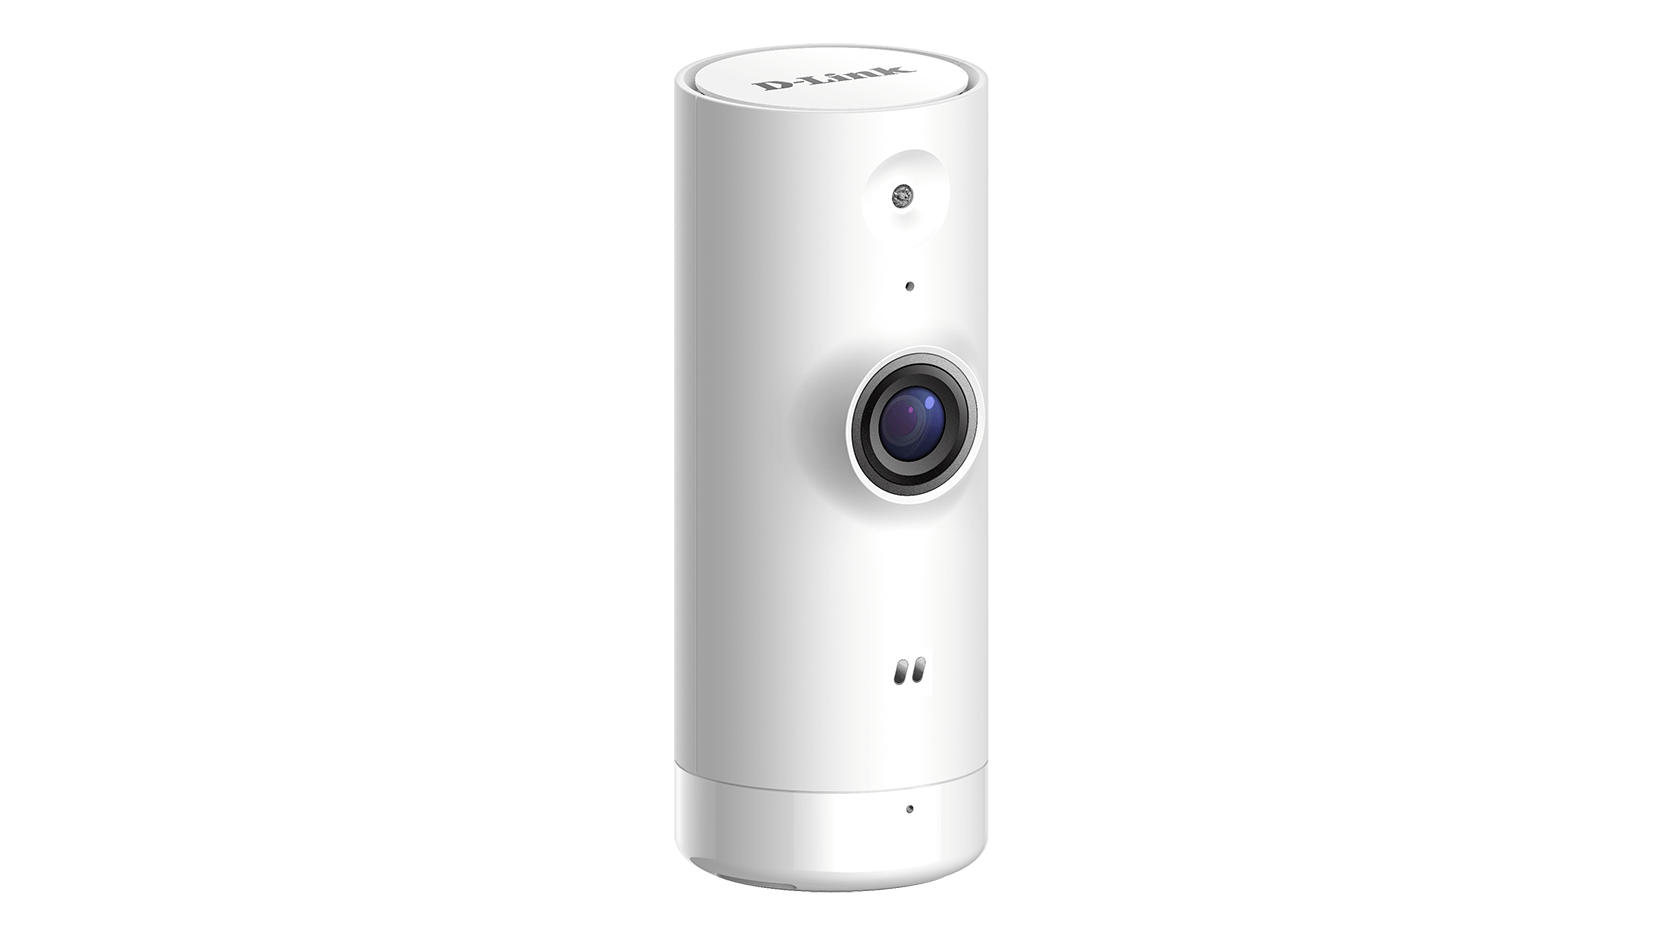 D-Link DCS-8000LH Mini HD WiFi Kamera integrierte Nachtsichtfunktion, Bewegungs- und Geräuscherkennung, HD Videoqualität in 720p, Tag und Nacht, 120-Grad-Weitwinkelsicht, Fern-Zugriff per App